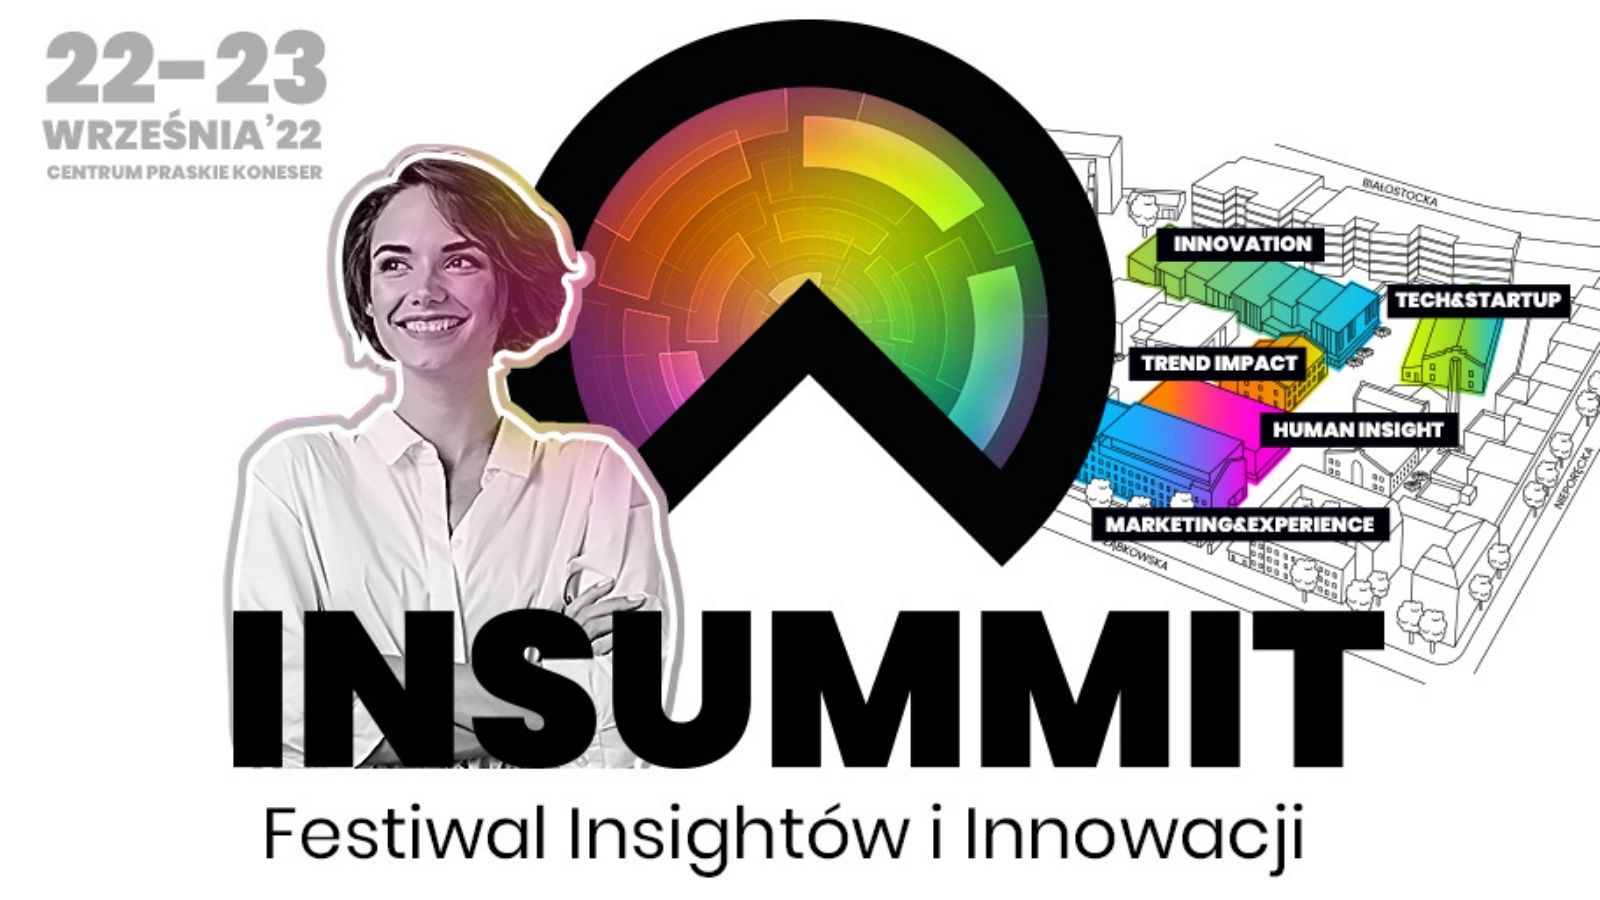 INSUMMIT – dołącz do twórców Festiwalu Insightów i Innowacji! Wydarzenia mediarun insummit